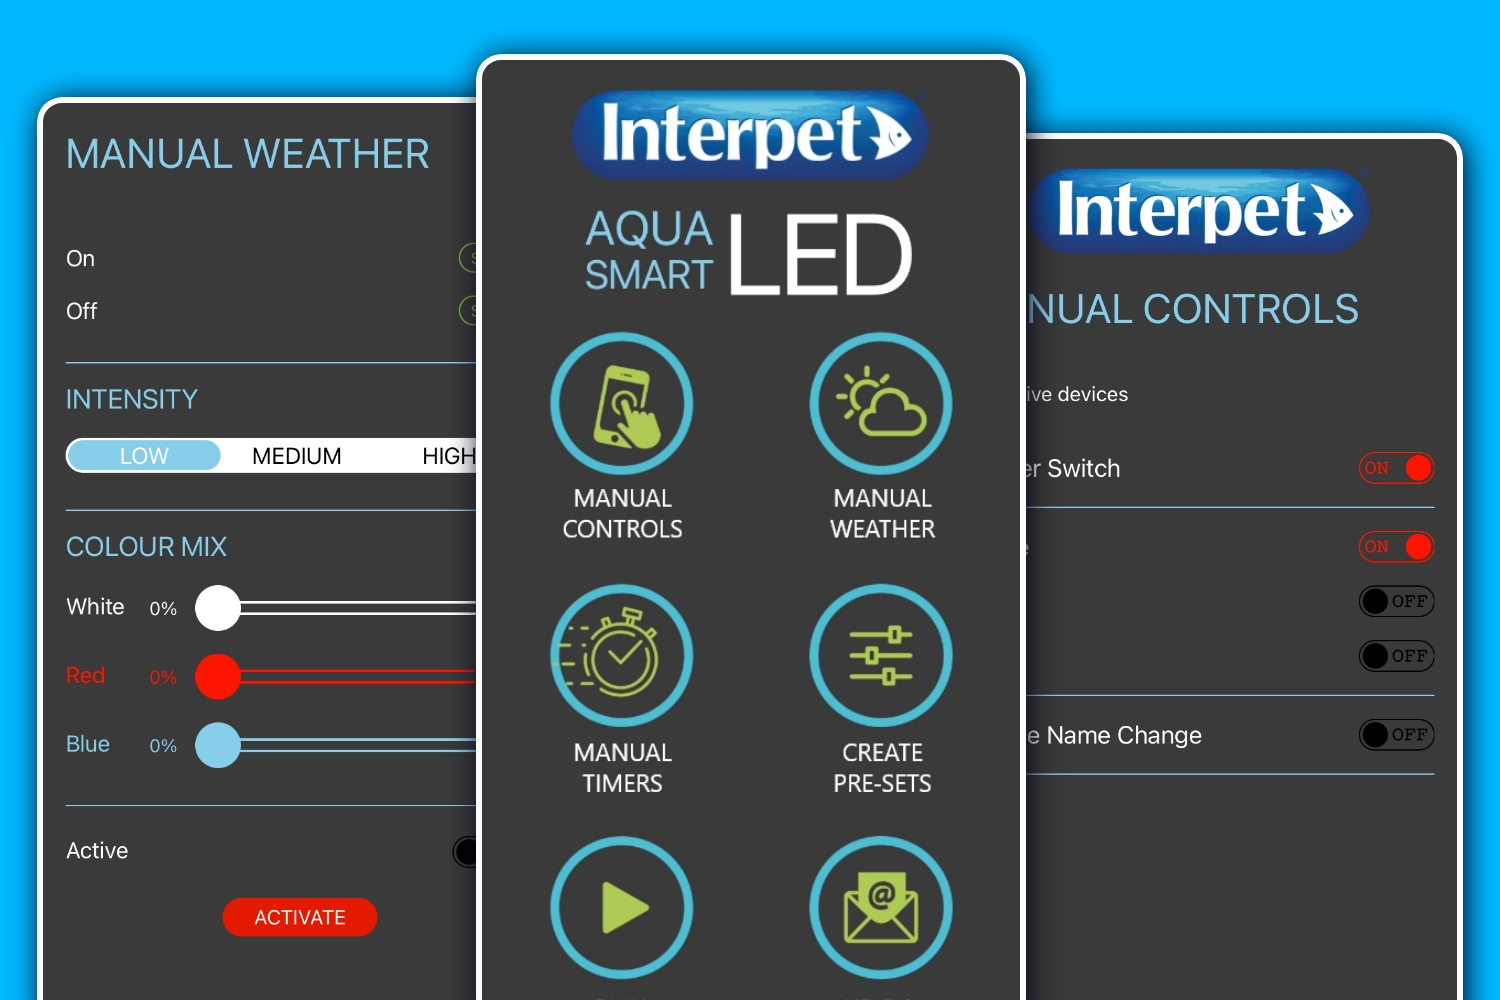 Interpet Aqua Smart LED App